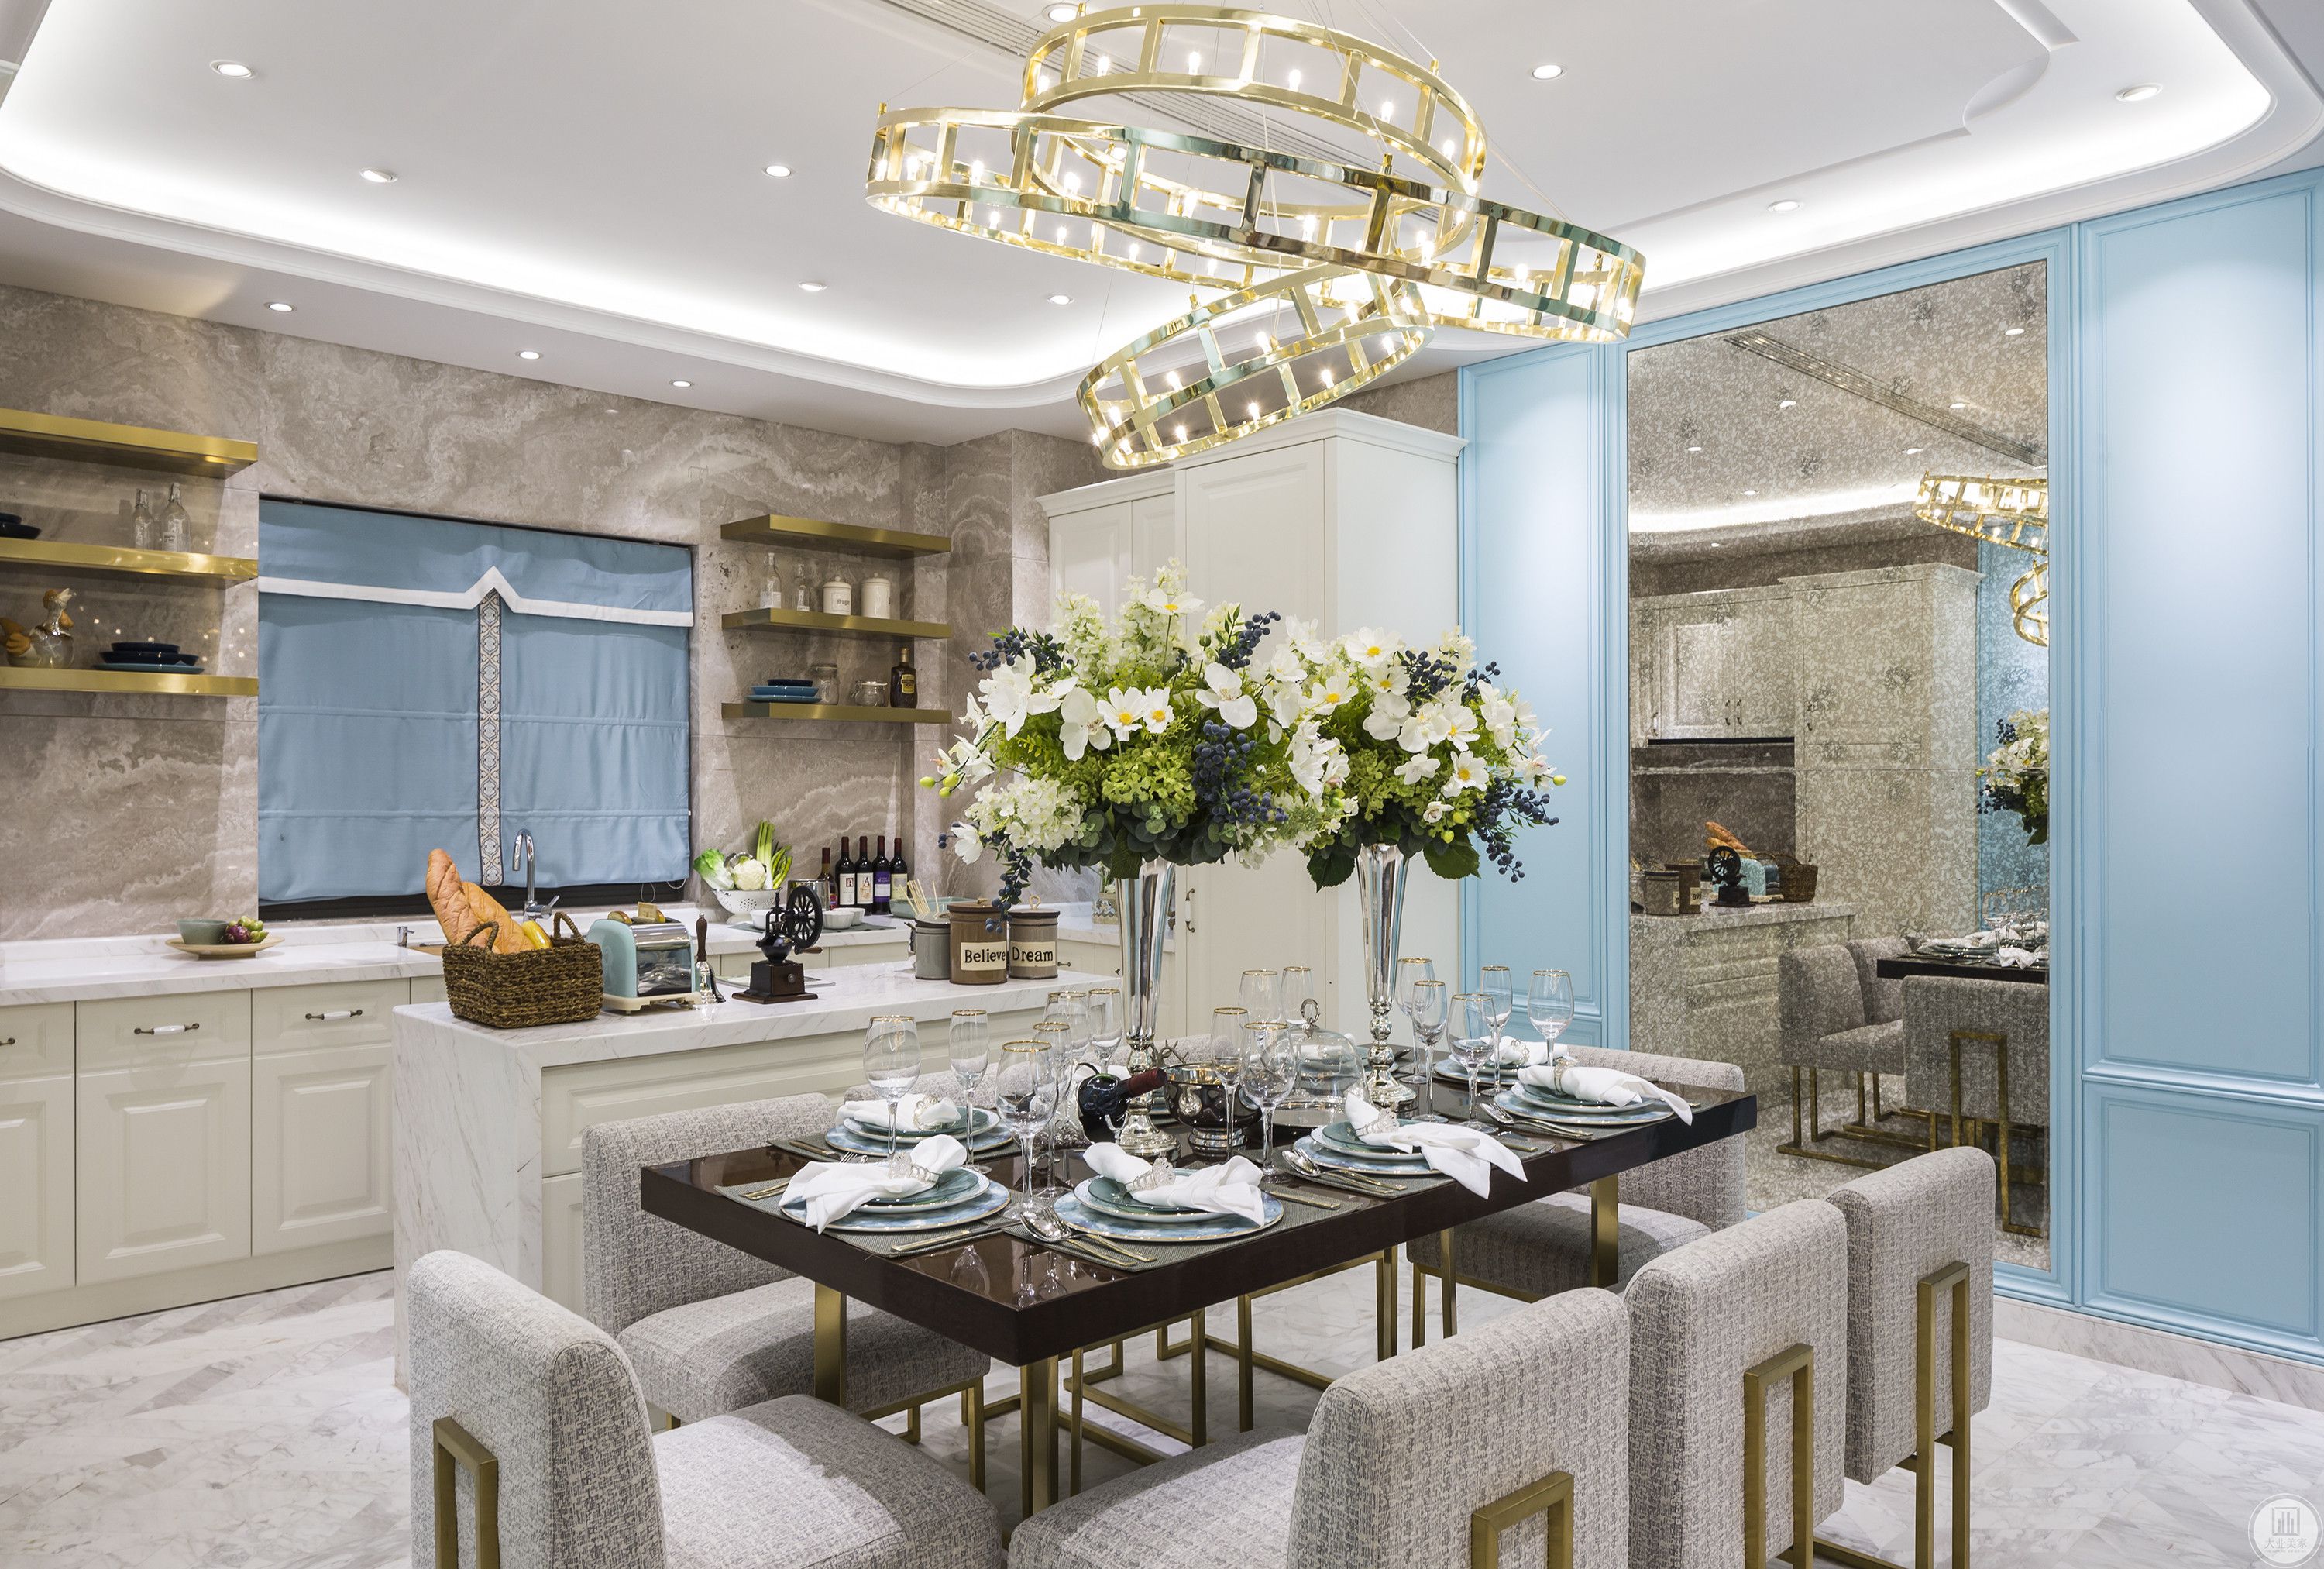 餐厅与客厅相通，设计师用蓝色演绎轻奢之美，让人们在优雅的用餐时光里重温法式贵族情调。花卉、灯具等元素精致美观，主人不凡的品味在空间中娓娓道来。